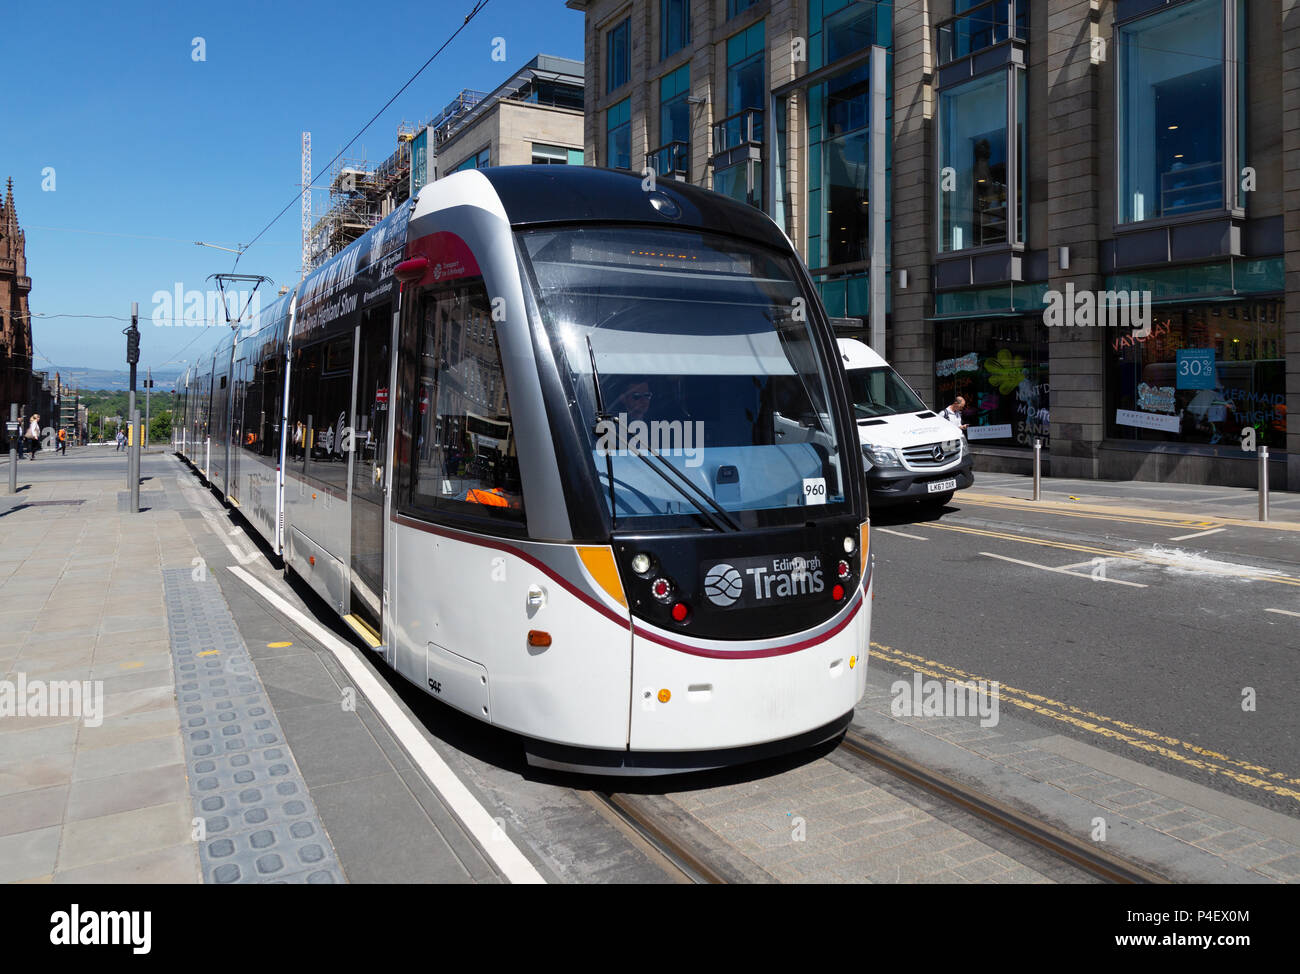 Les tramways d'Édimbourg - un tram dans une scène de rue, Edinburgh, Scotland UK Banque D'Images